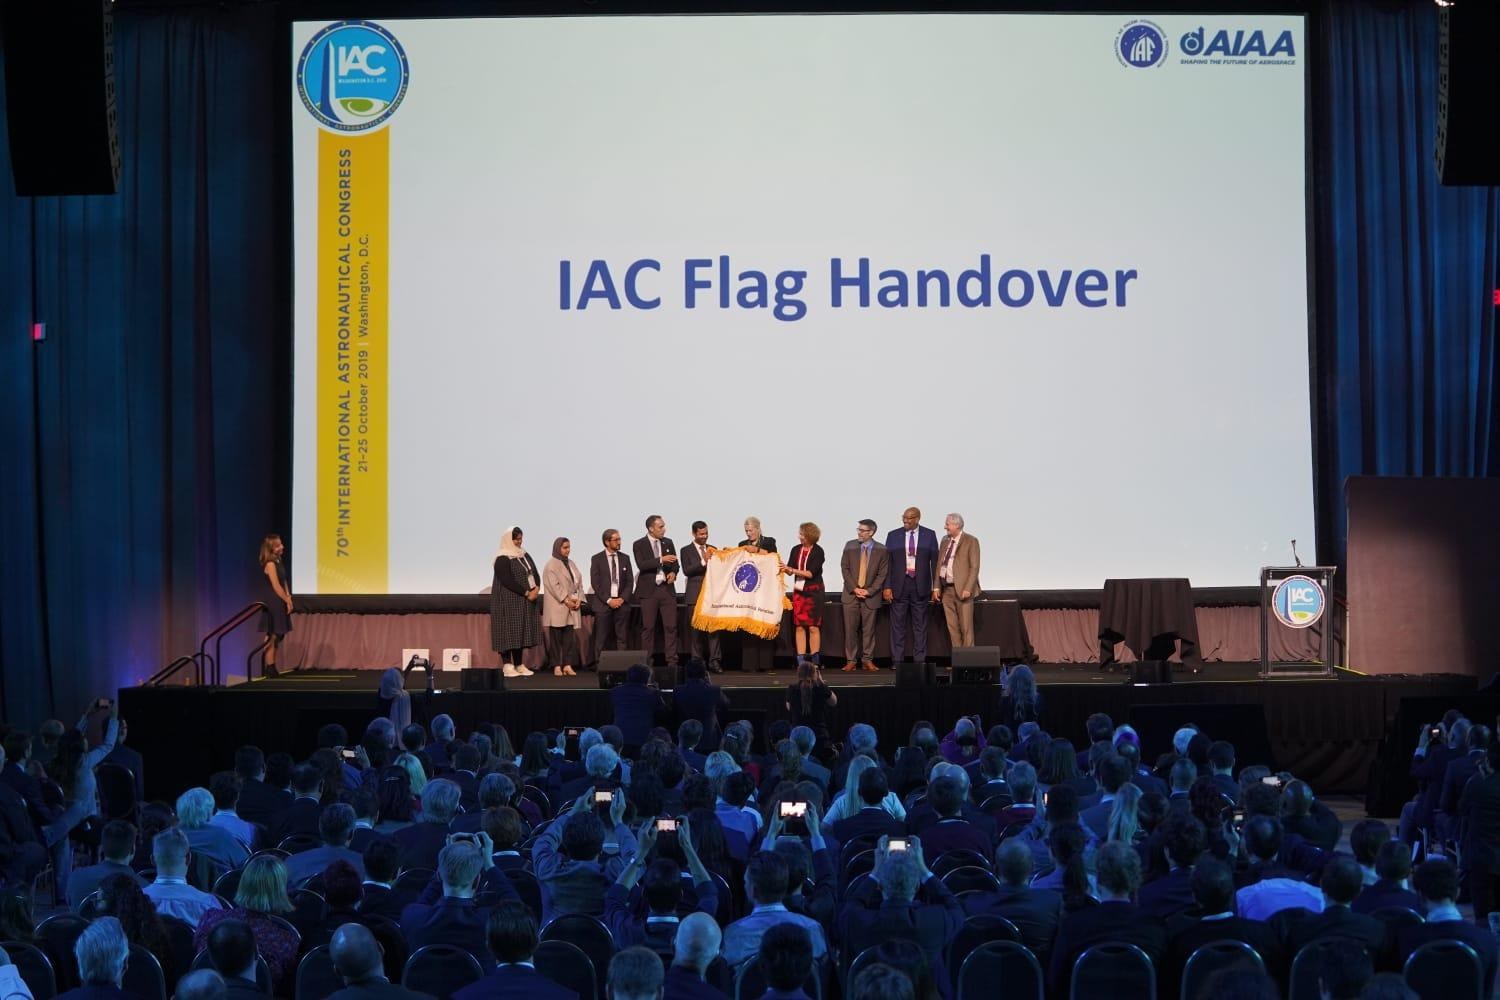 IAC flag handover